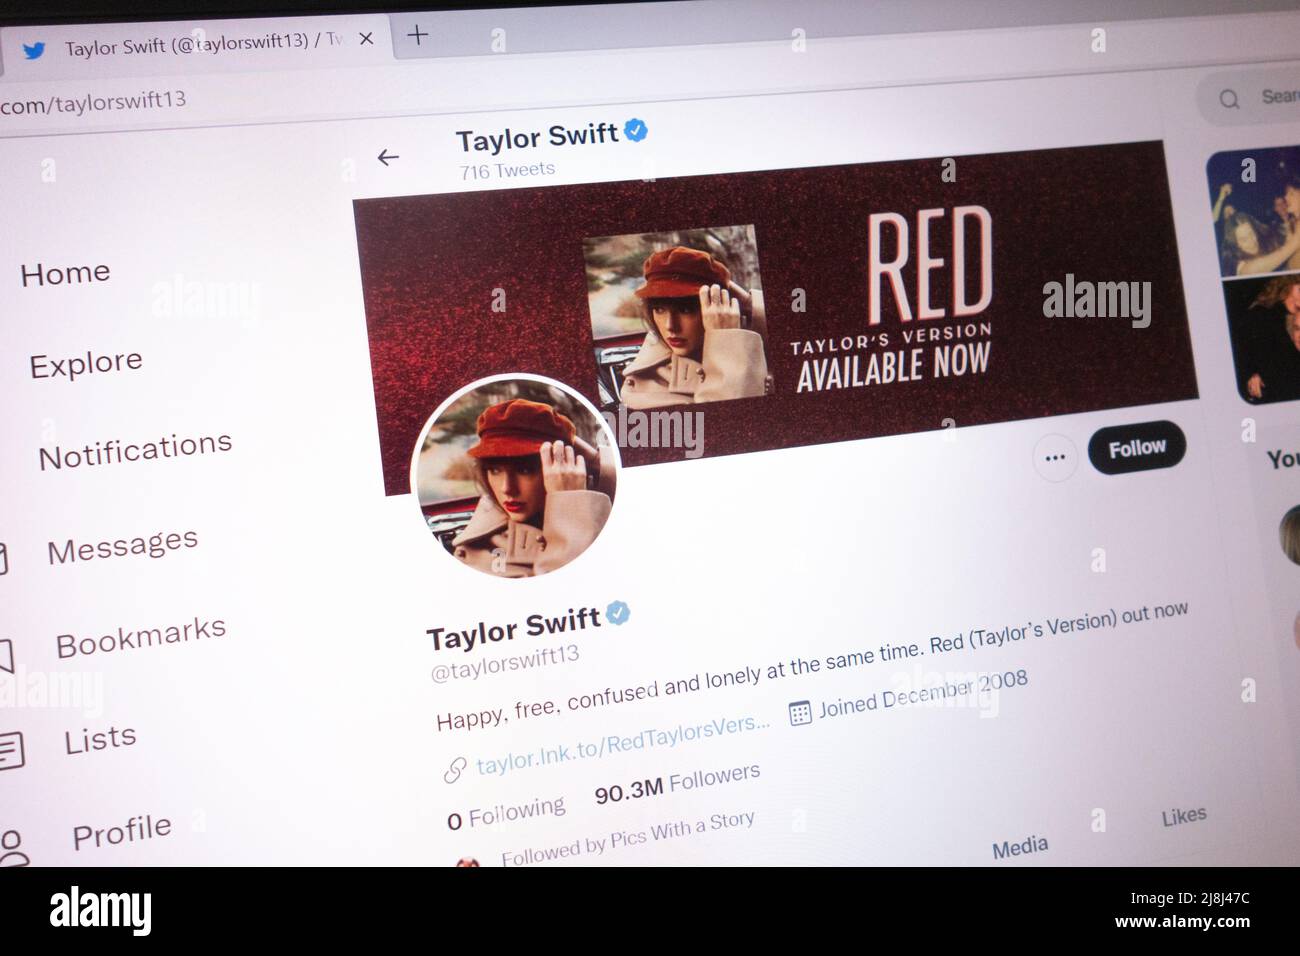 KONSKIE, POLEN - 14. Mai 2022: Taylor Swift offizieller Twitter-Account auf dem Laptop-Bildschirm angezeigt Stockfoto